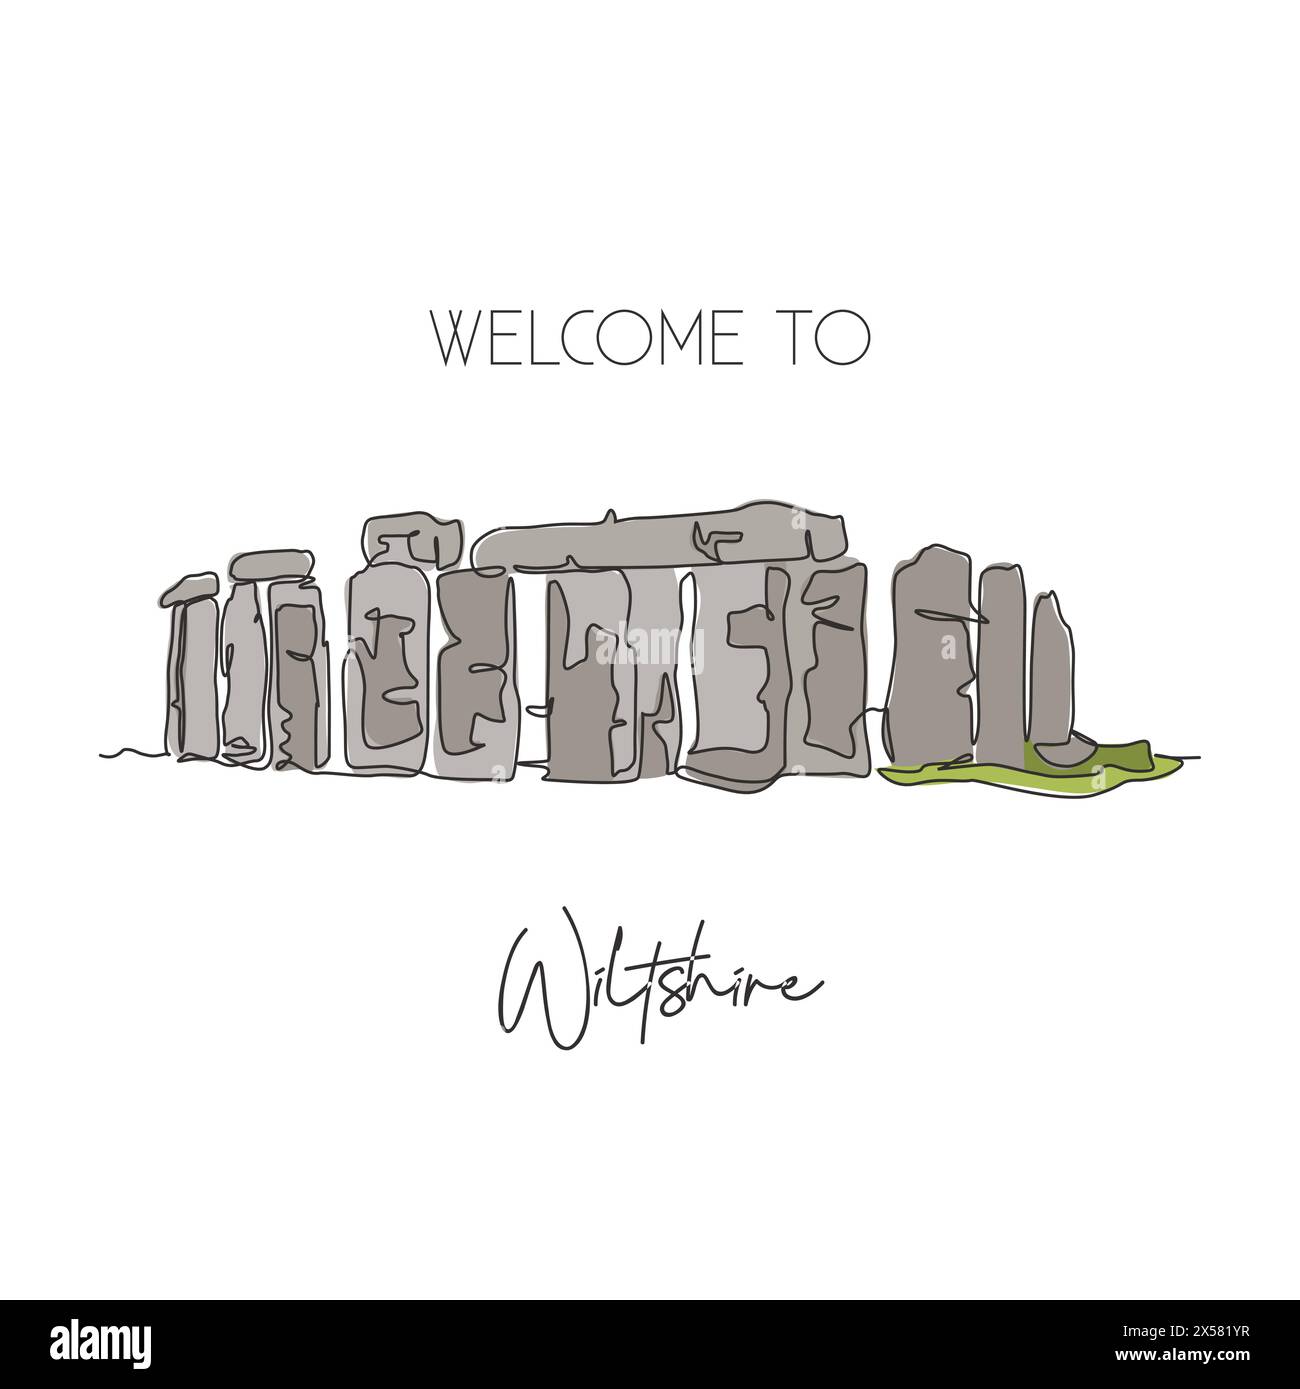 Linea singola continua che traccia il punto di riferimento preistorico di Stonehenge. Famoso vecchio posto nel Wiltshire, Inghilterra. World Travel Home Art decor parete stampa poster c Illustrazione Vettoriale